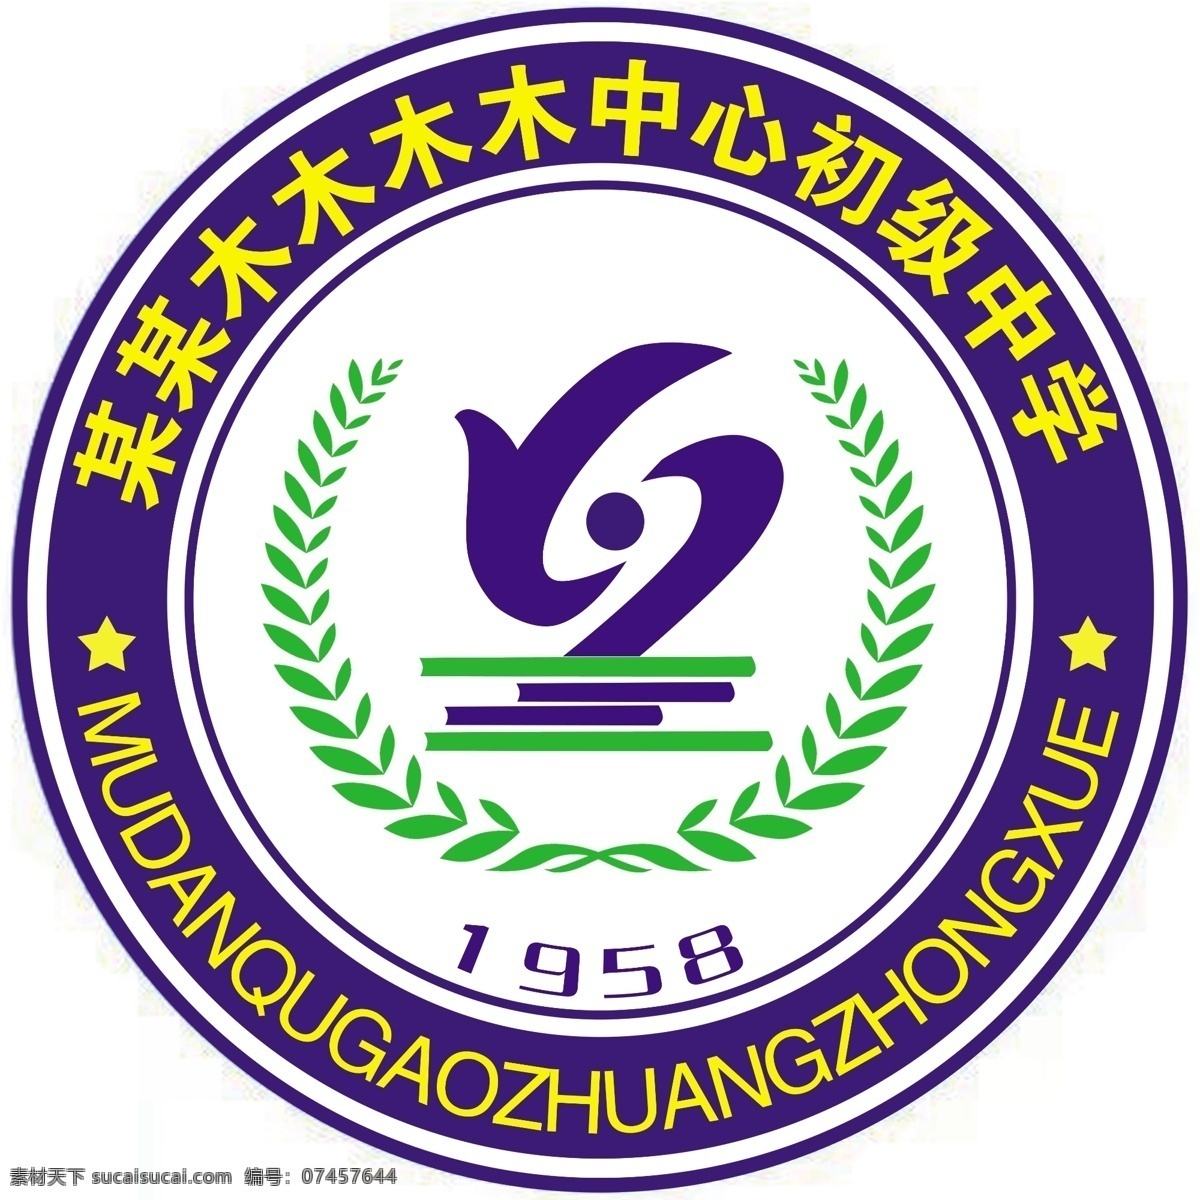 学校标志 圆形学校 标志 高清 logo 初中 中心